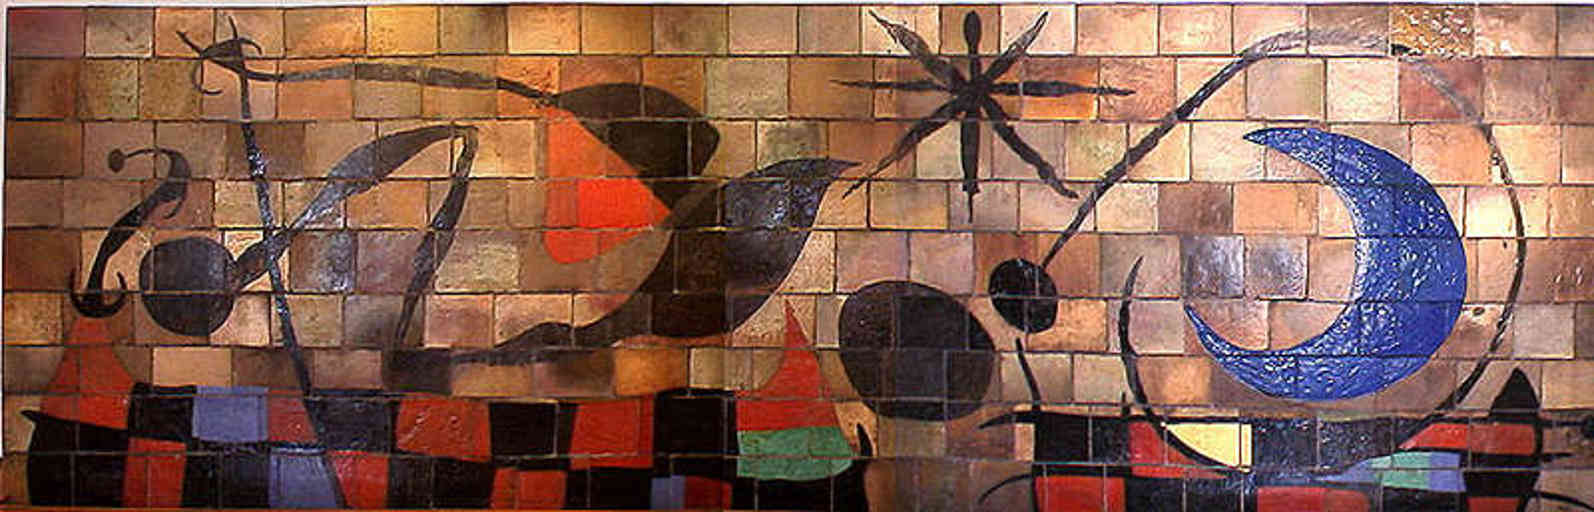 Joan Miró e Josep Llorens i Artigas ,Walls of the Sun and the Moon